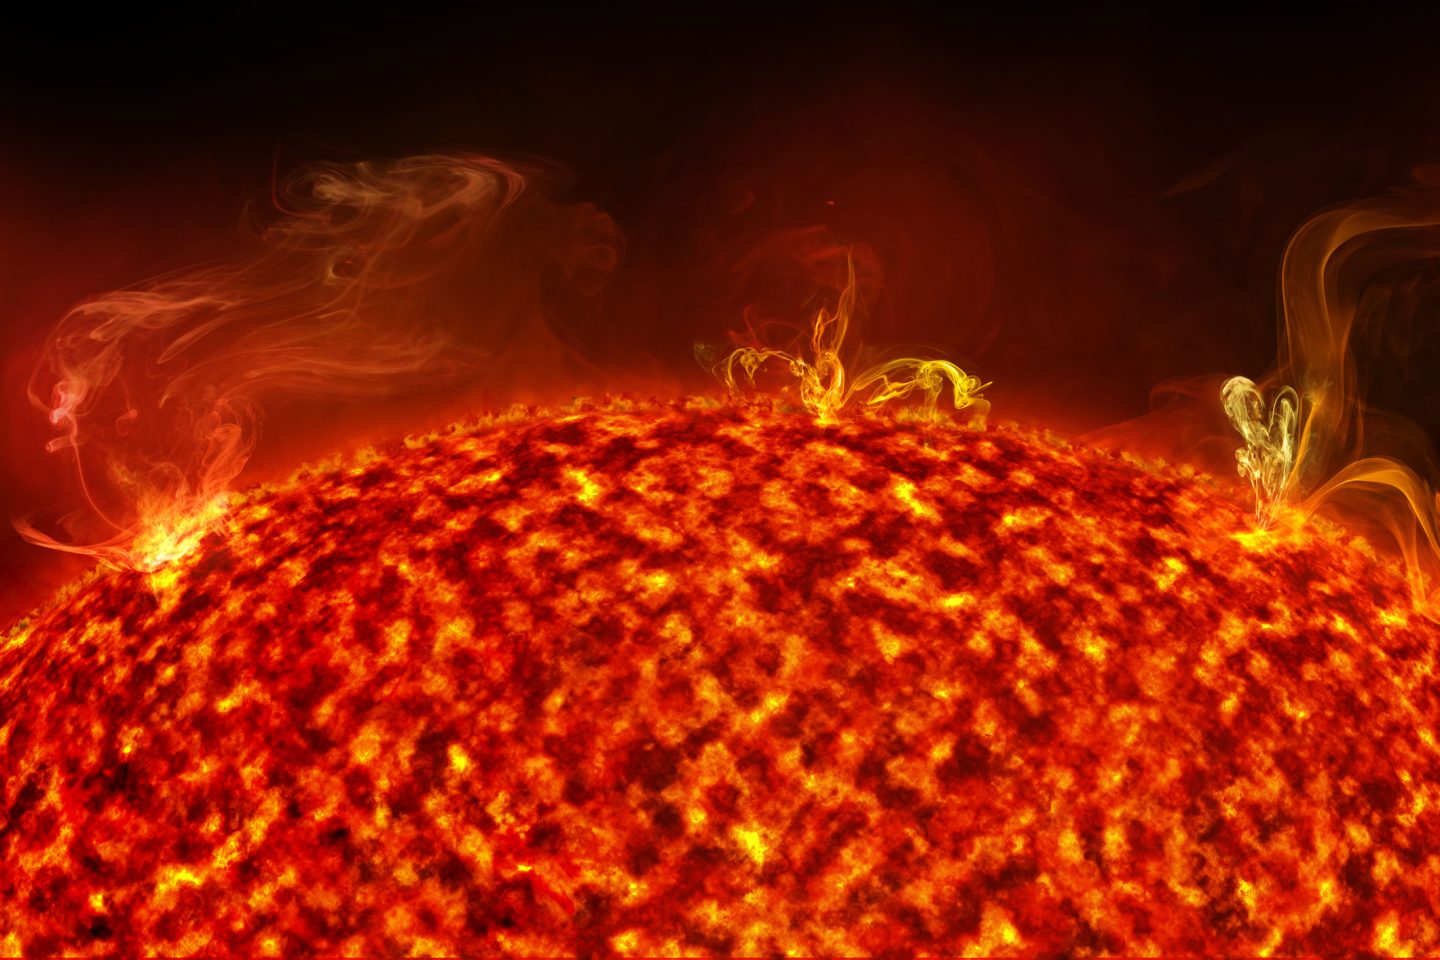 بقعة شمسية تضاعف حجمها خلال يوم أرضي واحد والباحثون يتساءلون عن السبب